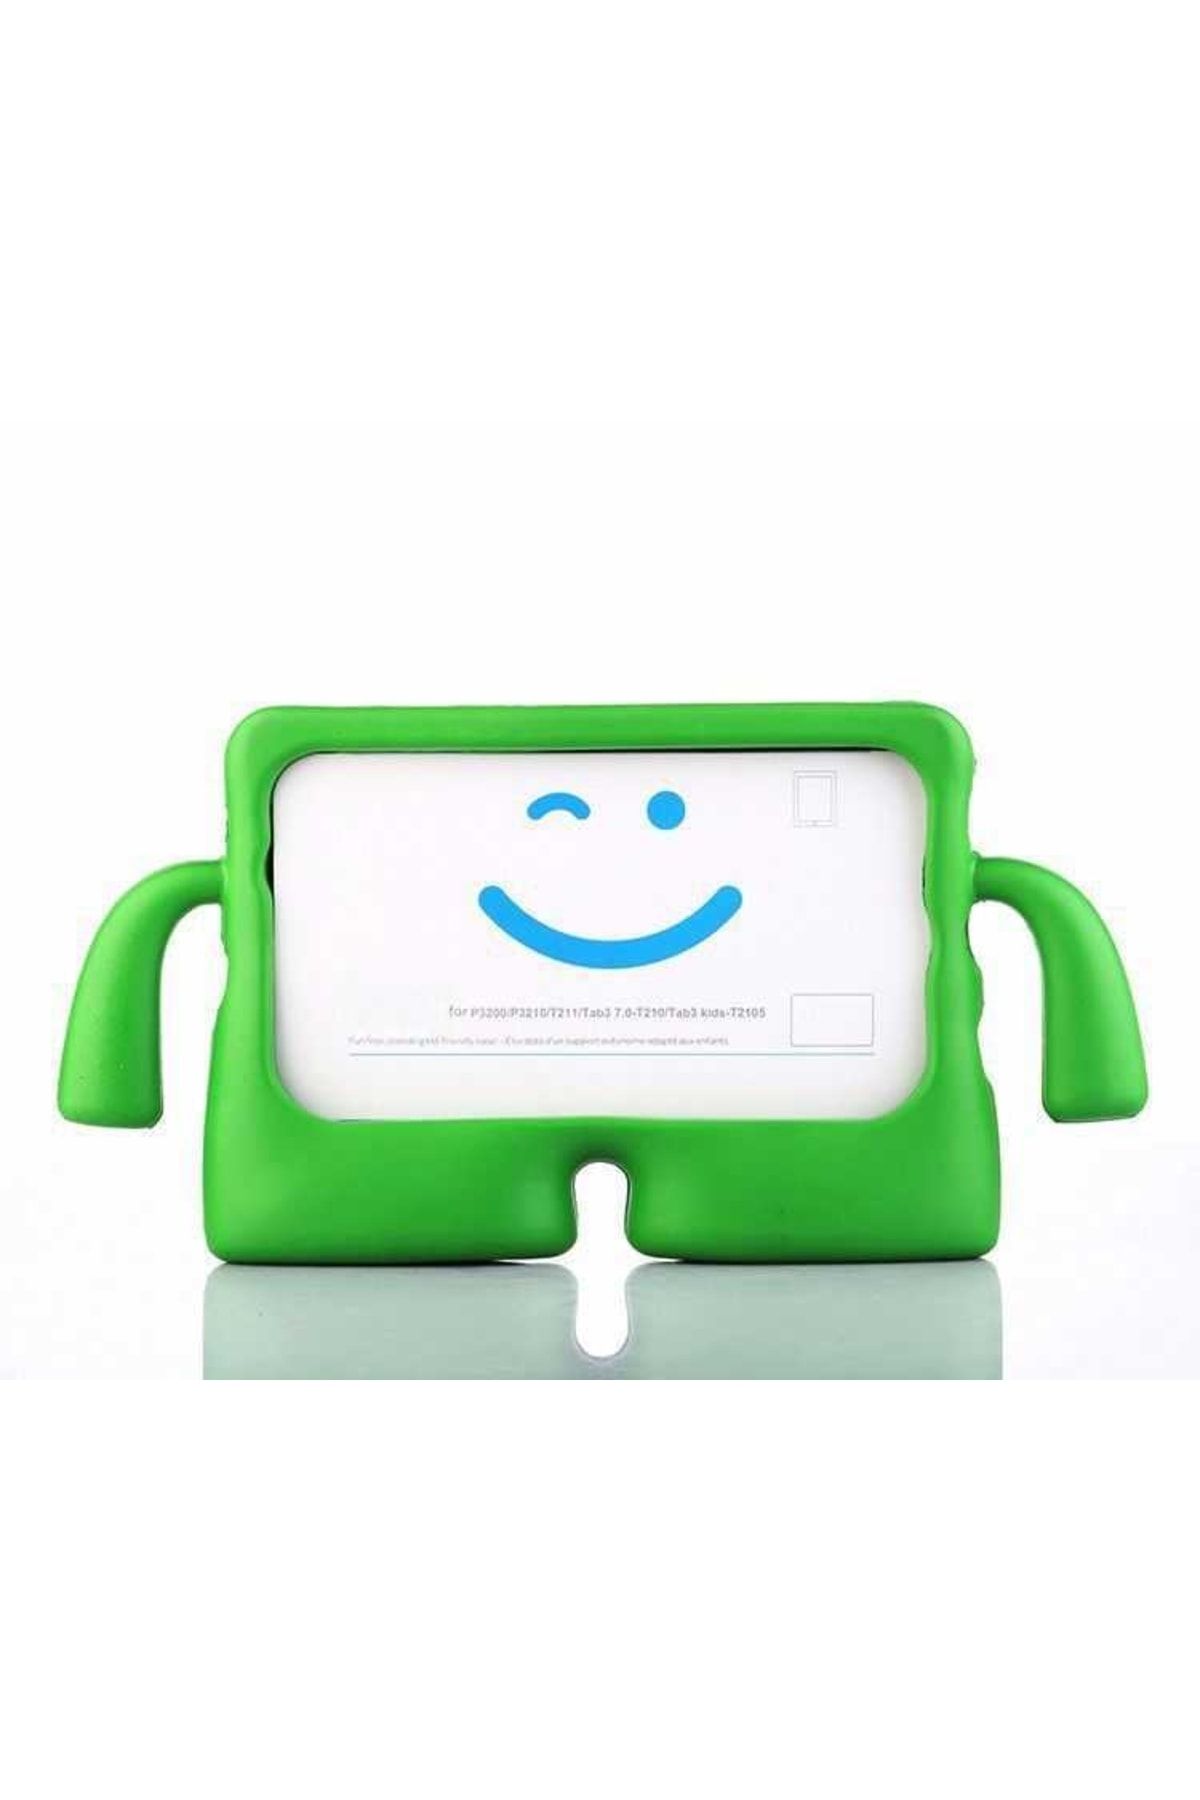 HTstore Tablet Mini 5 Çocuk Standlı Tablet Kılıf-yeşil